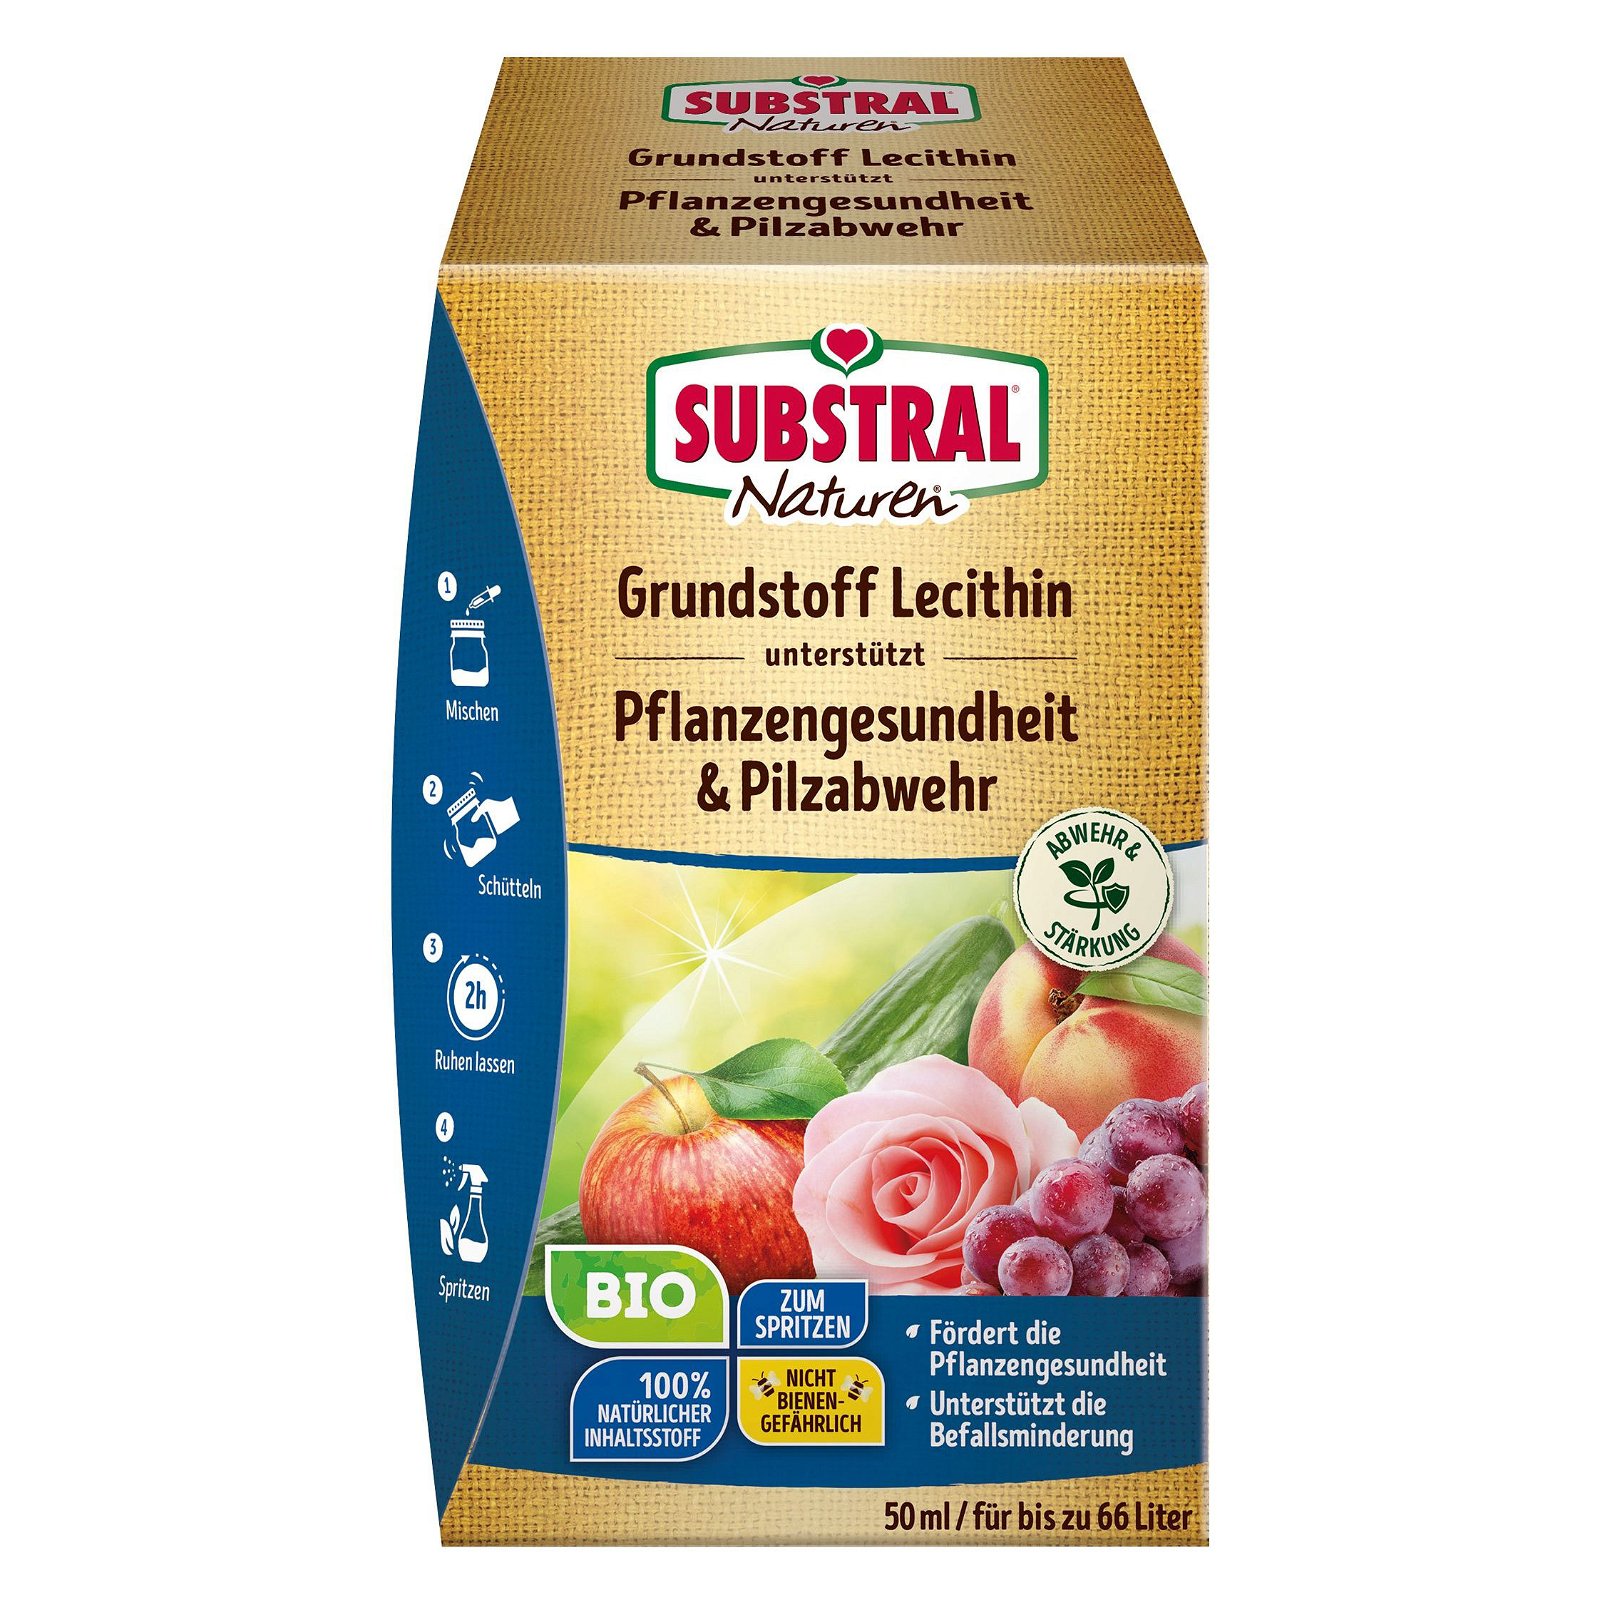 Grundstoff Lecithin-Konzentrat für Pflanzengesundheit & Pilzabwehr, 50 ml